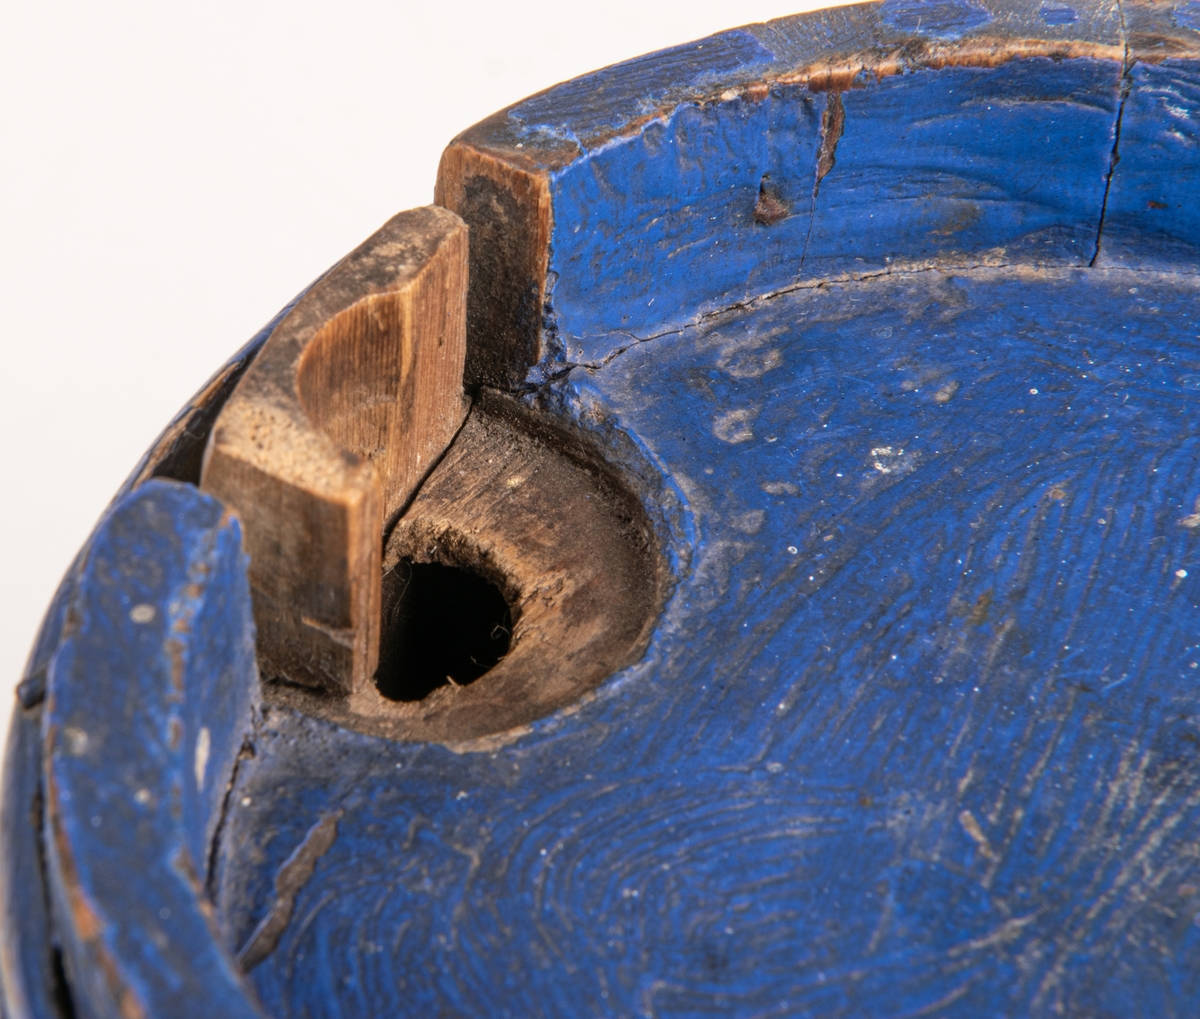 Brännvinskutting laggad, för vätska, trä, flätad rot, blå färg, rund med platt rygg.
14 träband.